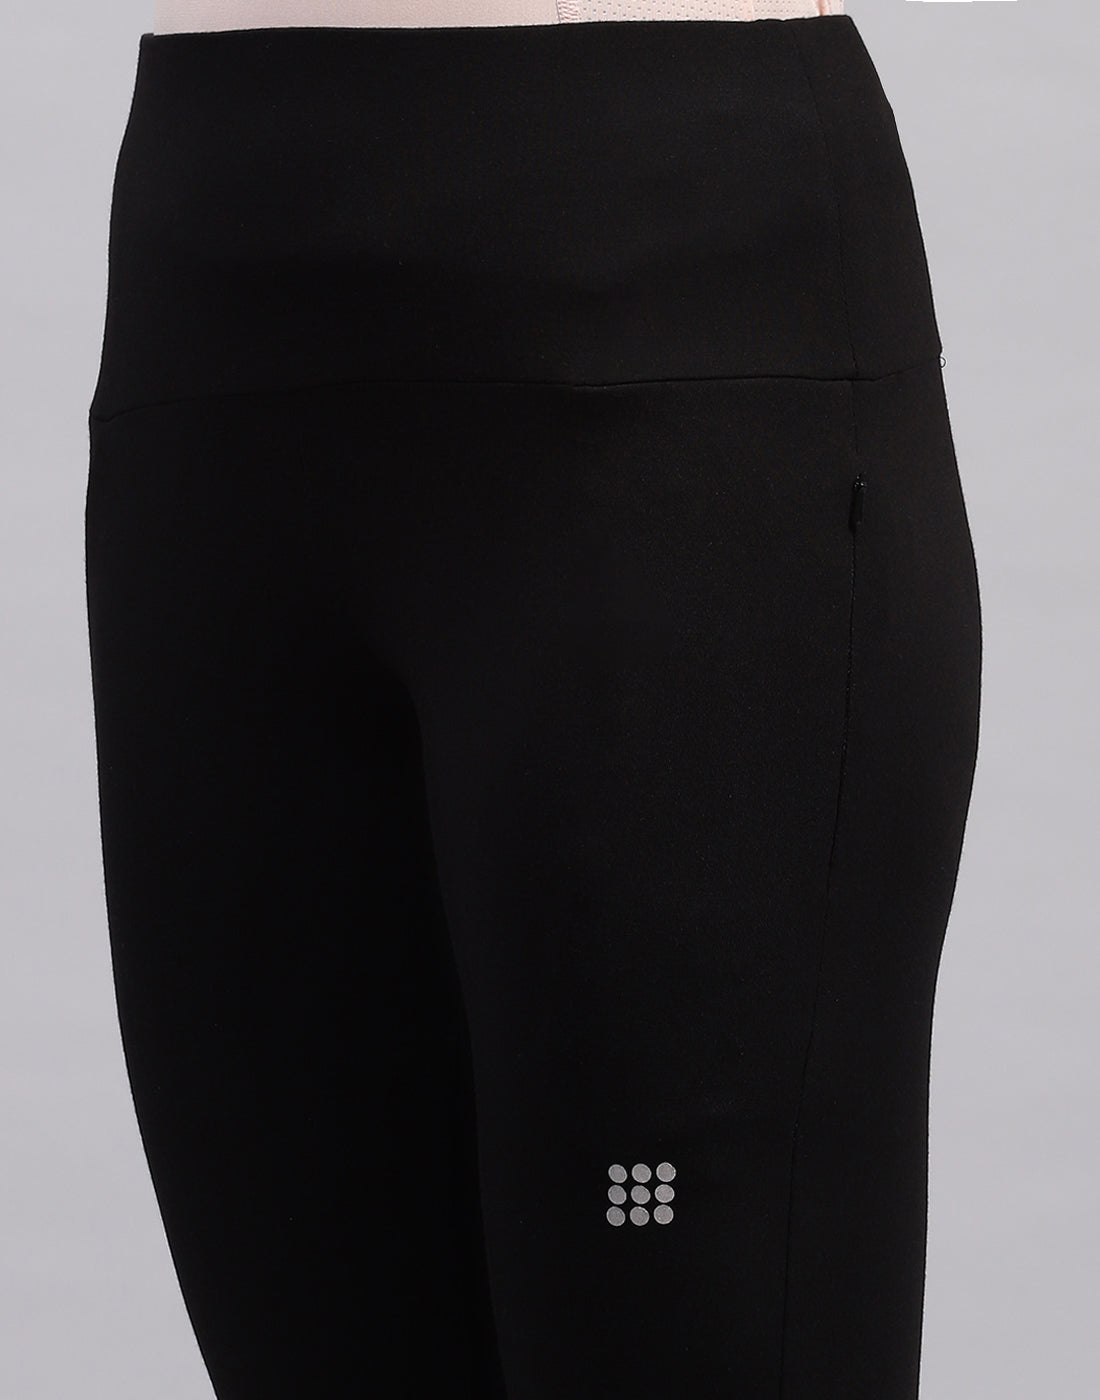 Women Black Solid Regular Fit Yoga Pant